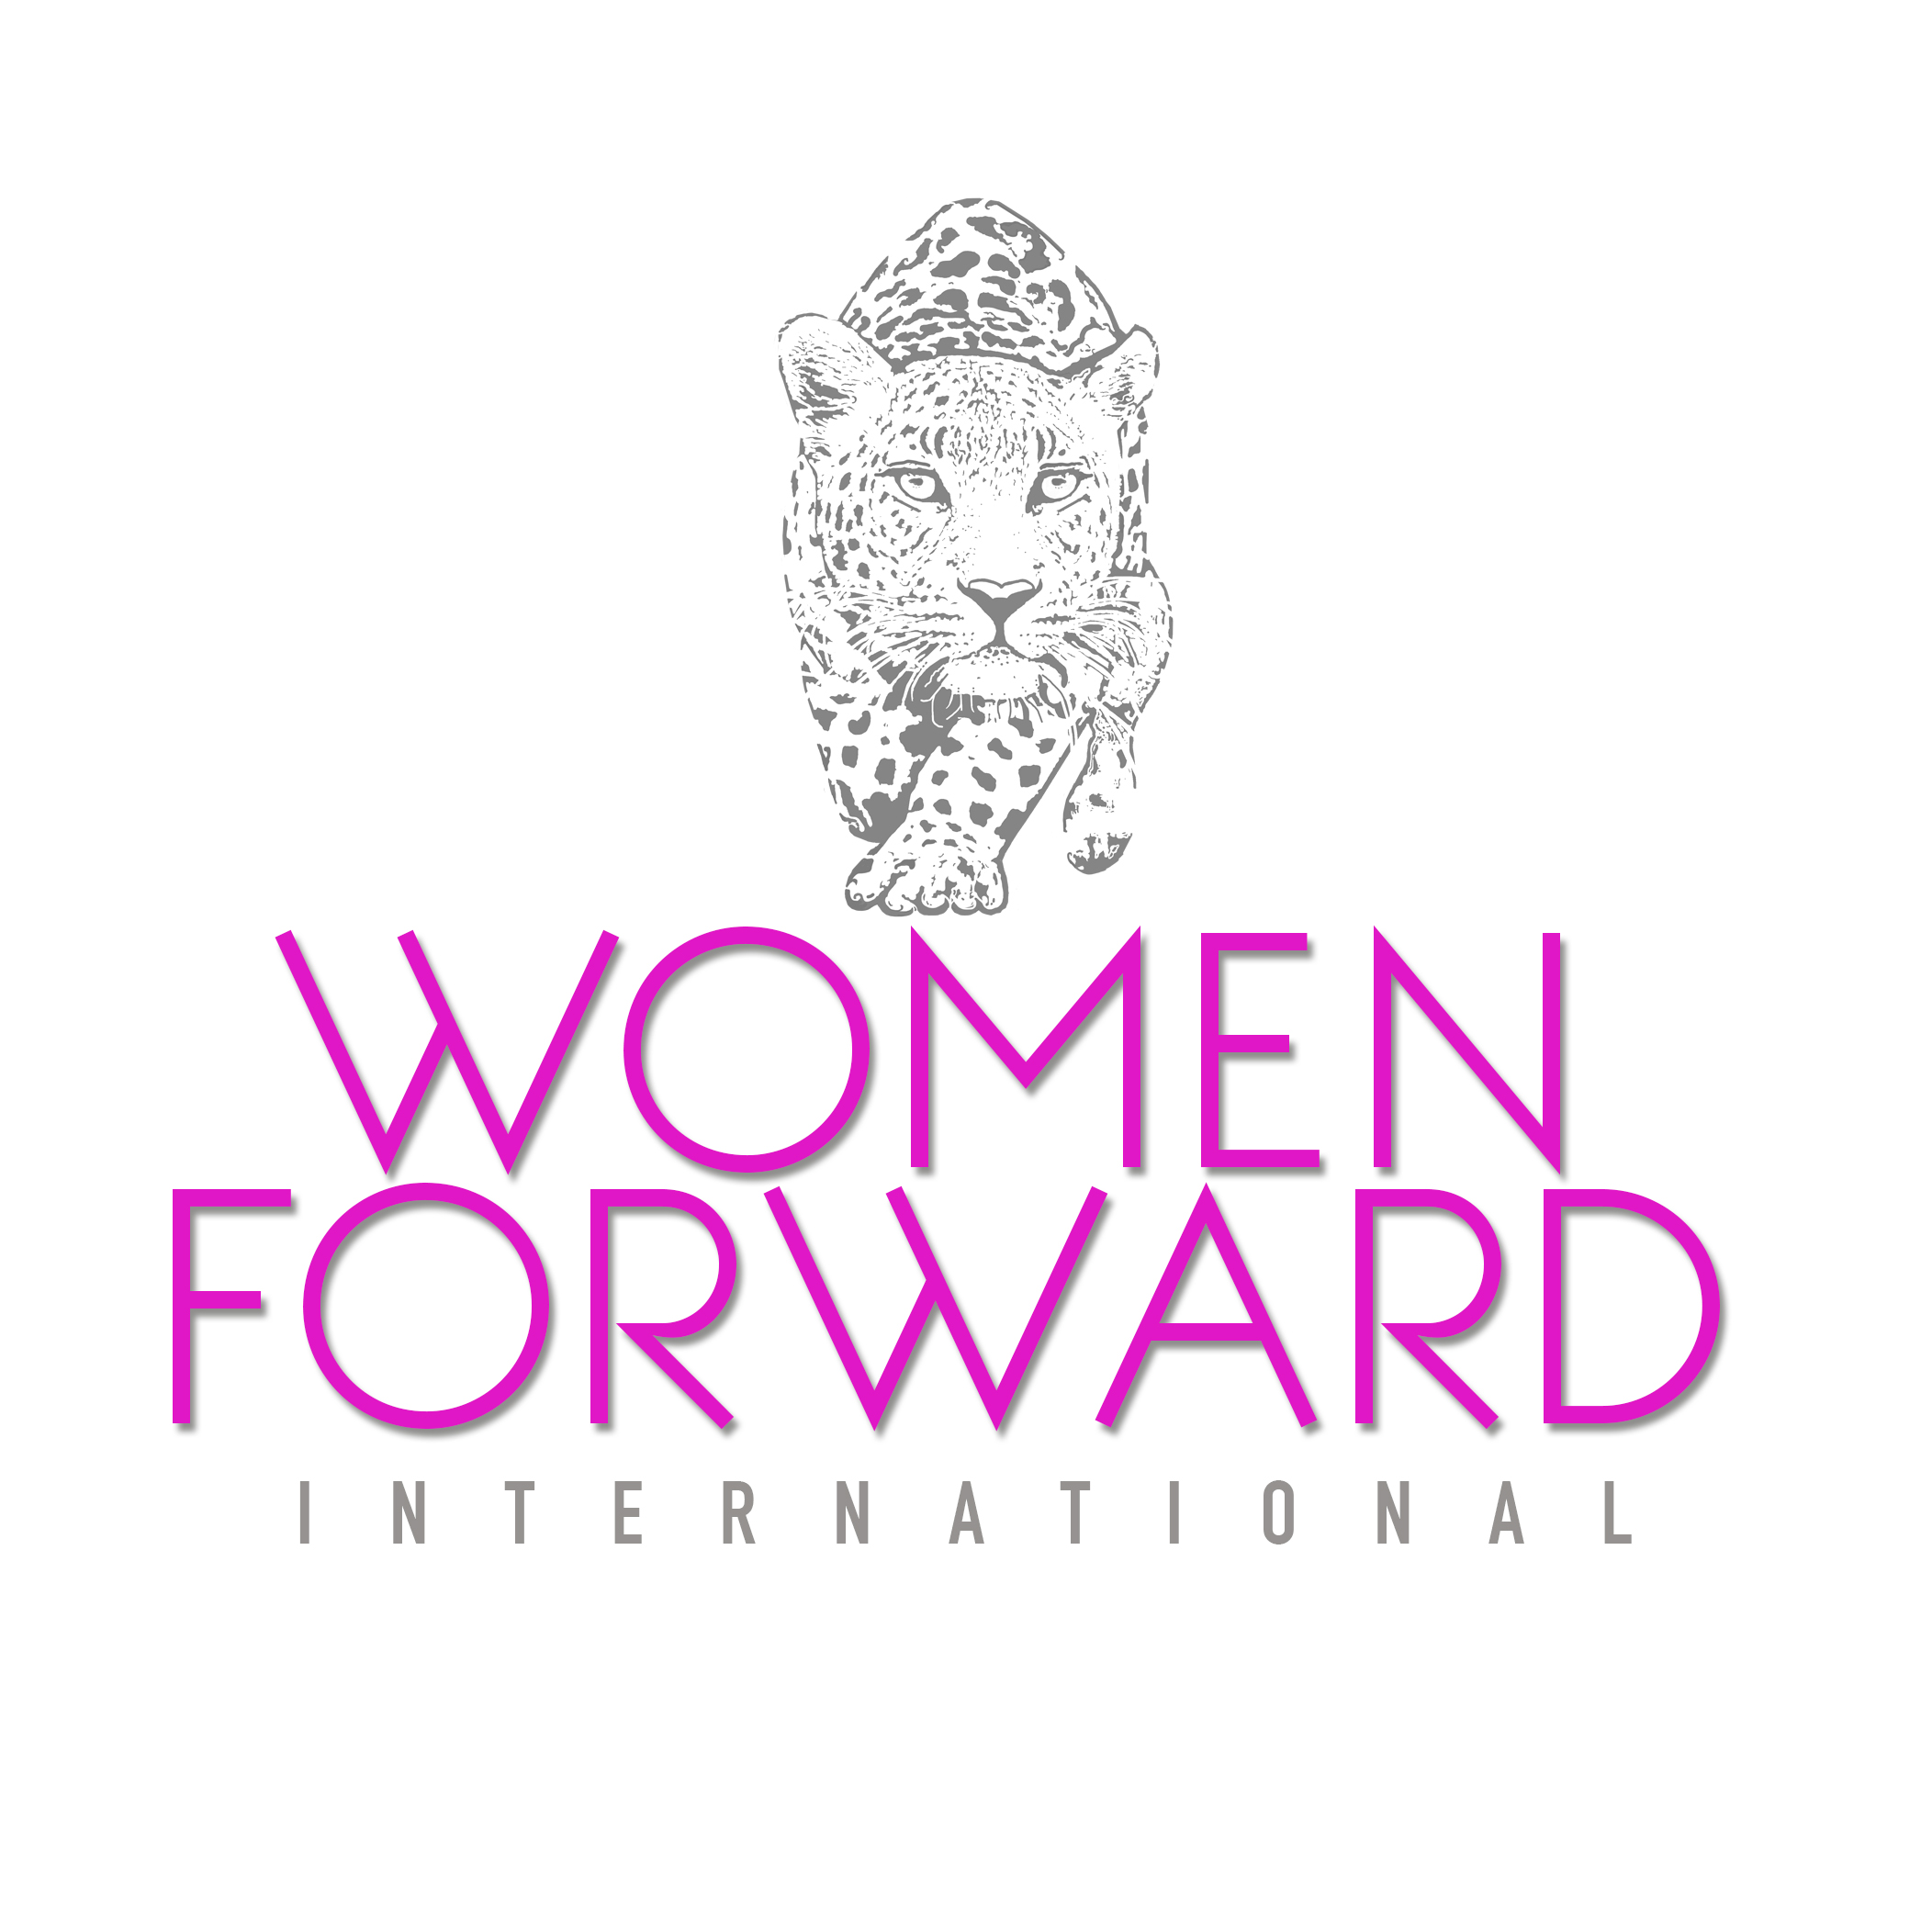 Women Forward International at Aspen Institute